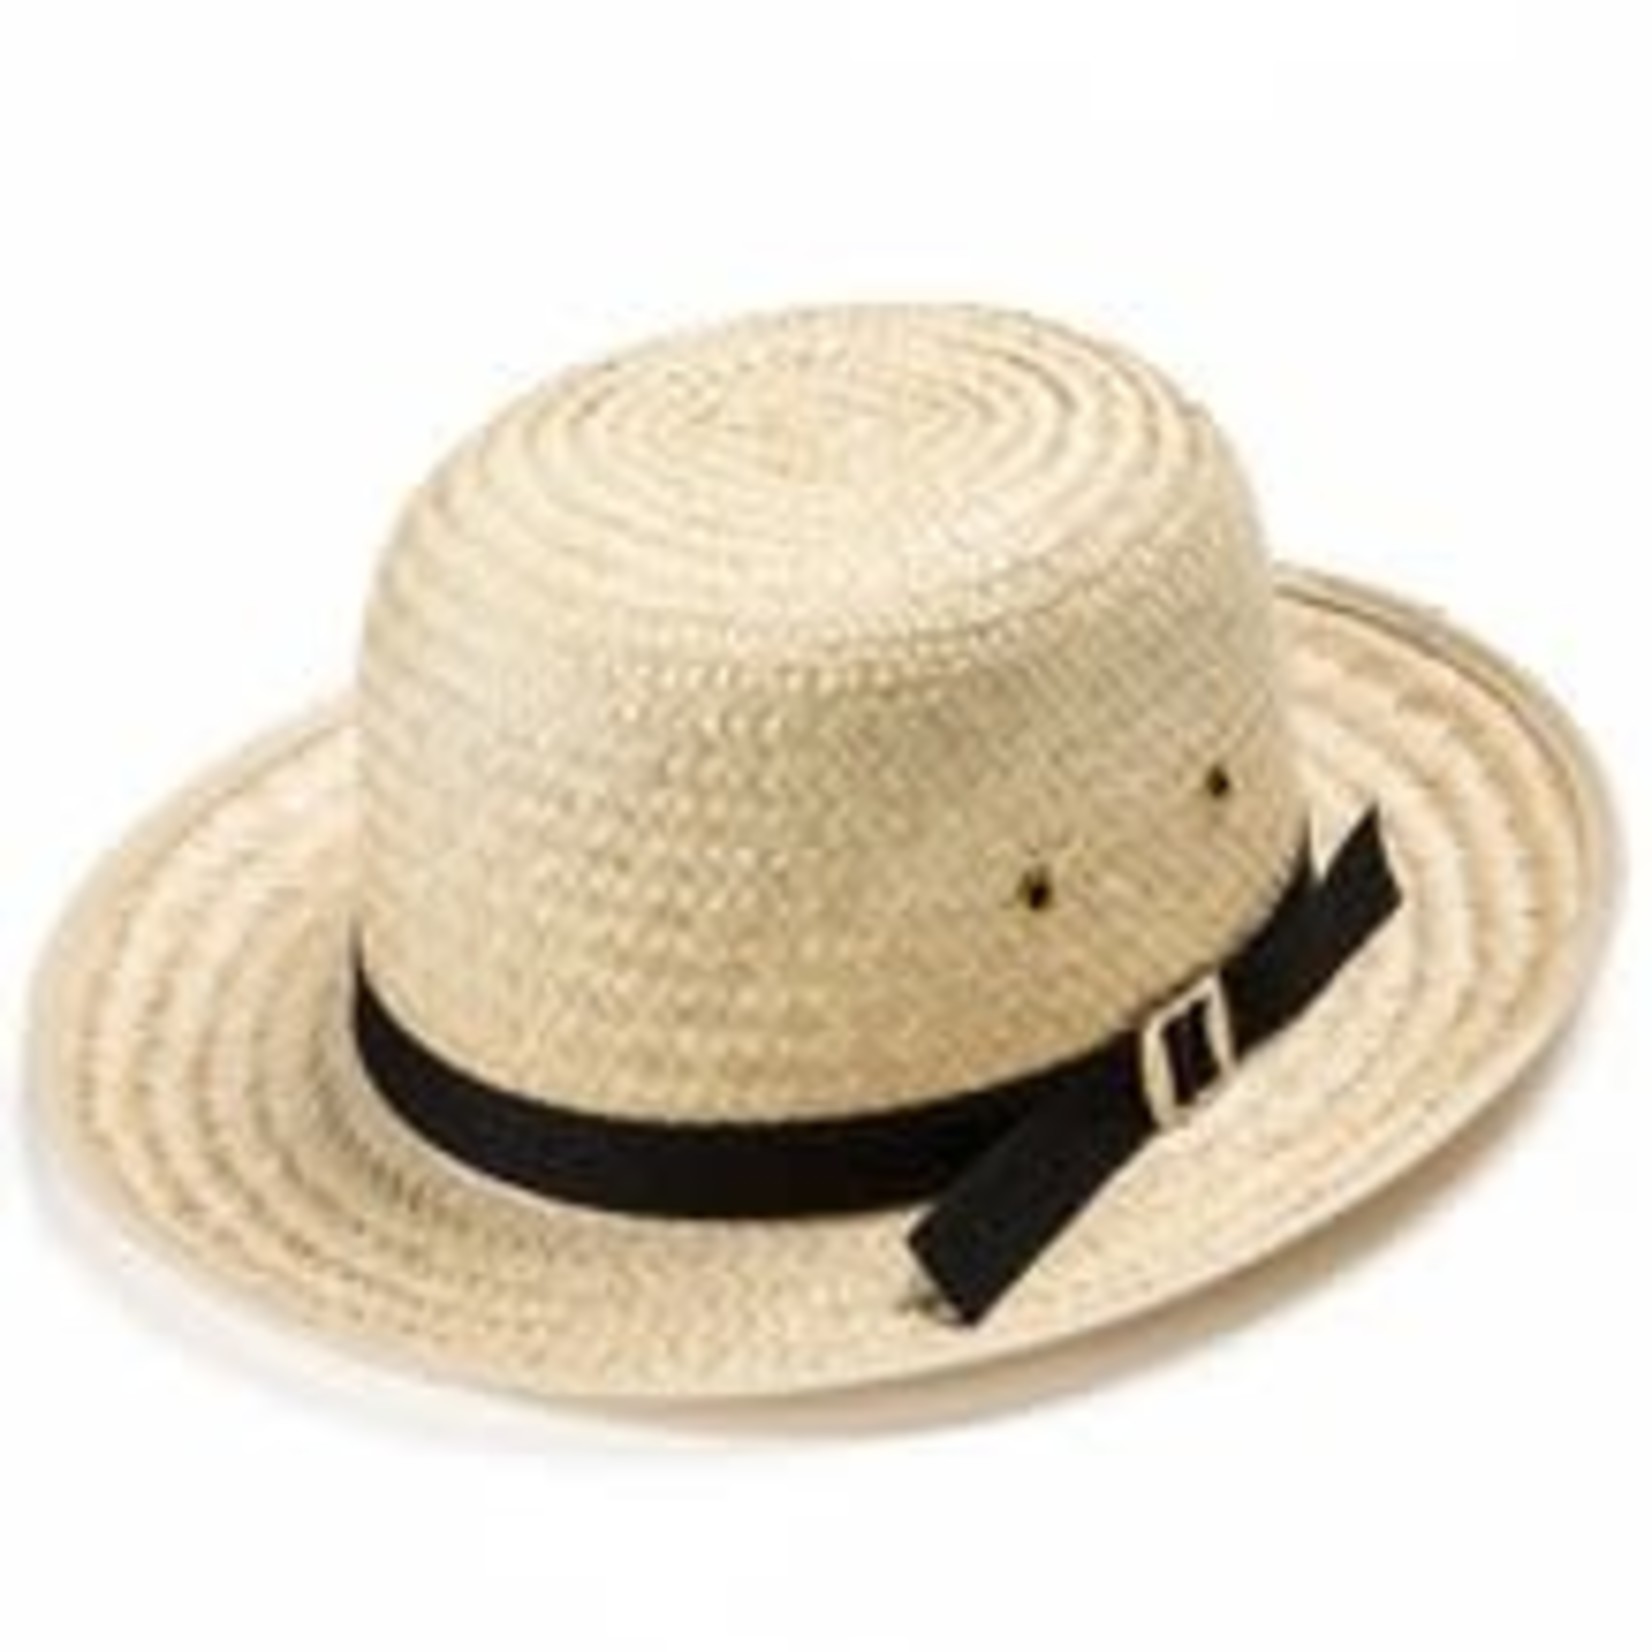 Mennonite Straw Hat